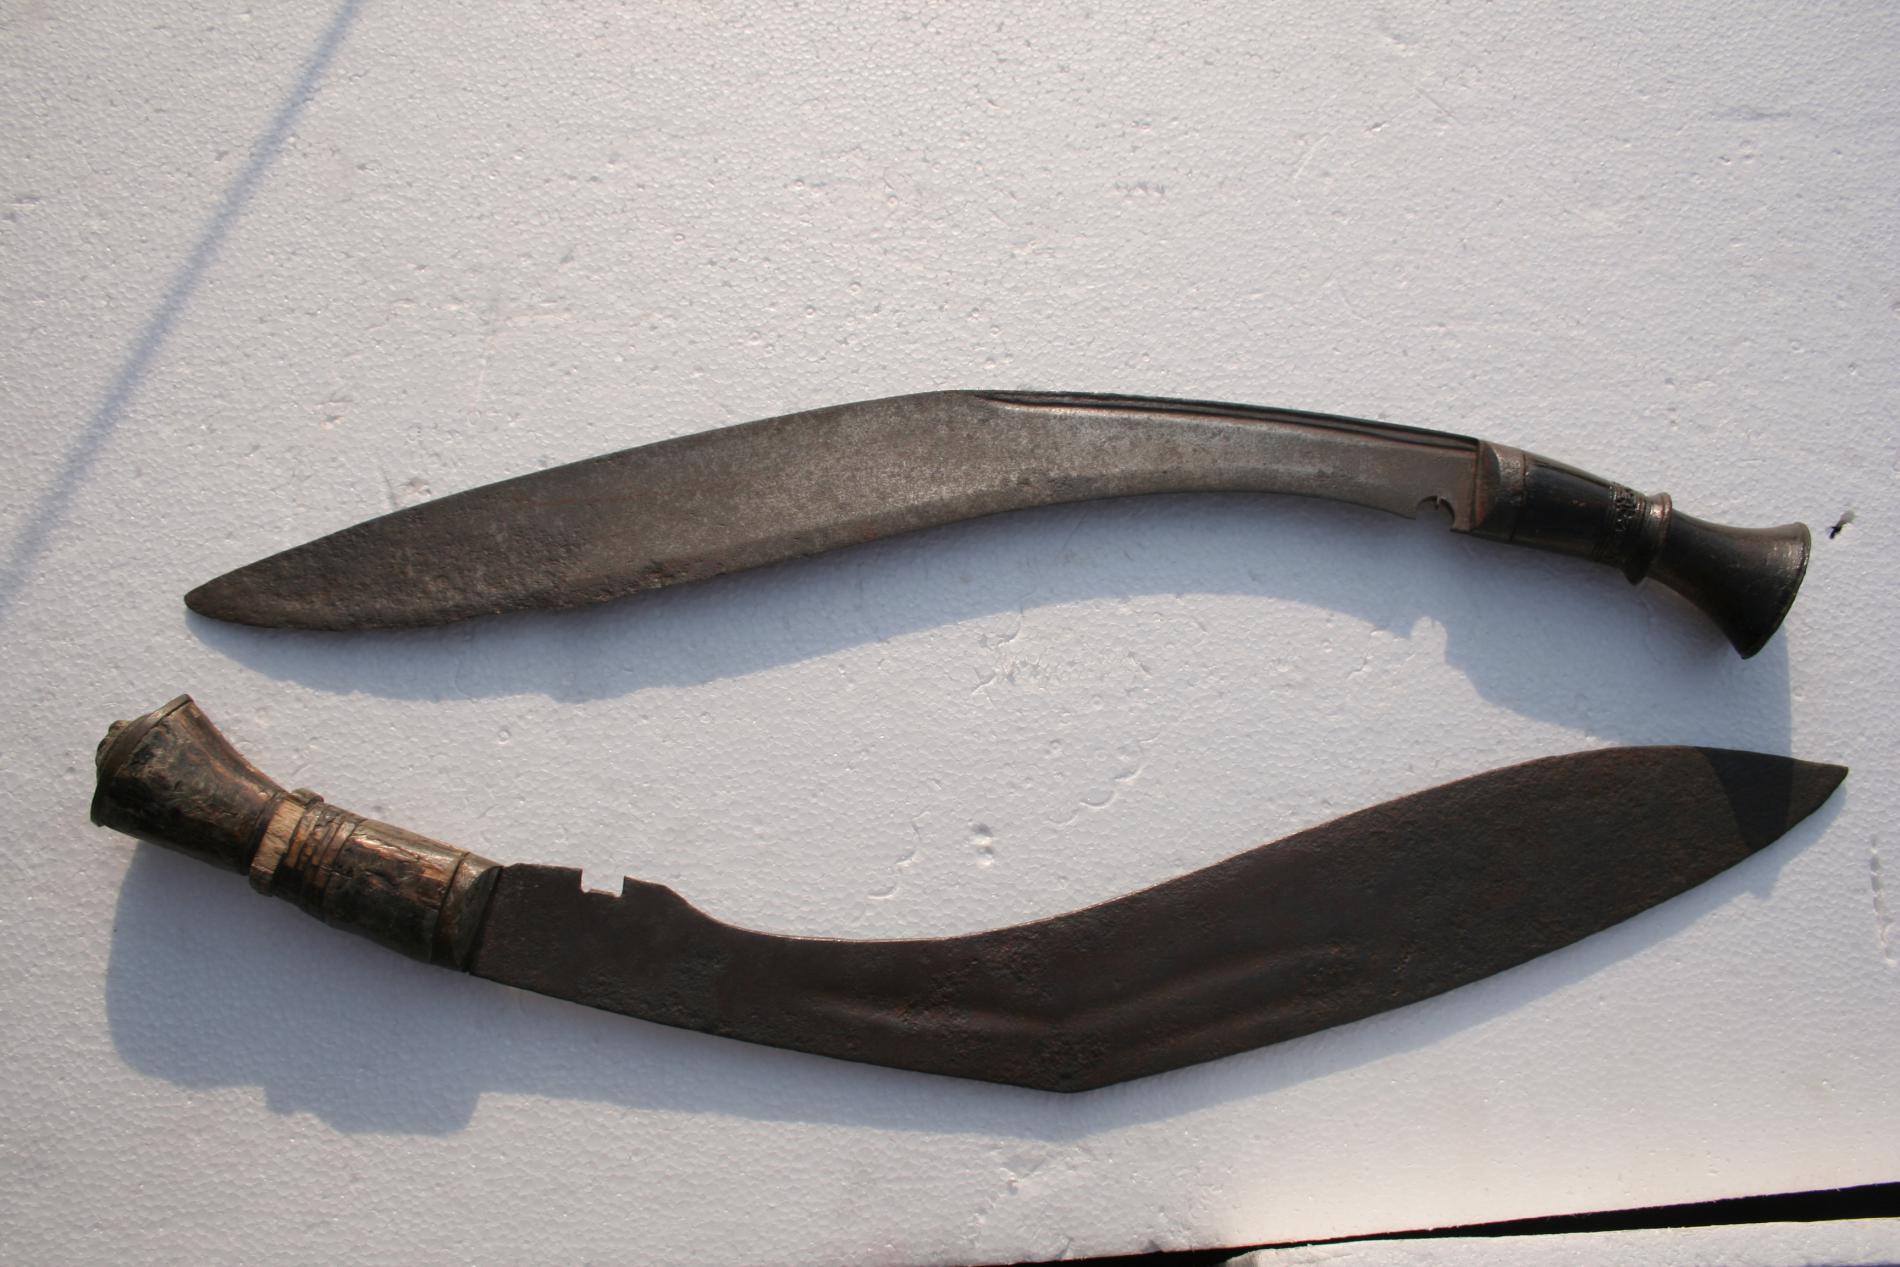 Kukari, Ancient &amp; Medieval weapons of Maharashtra